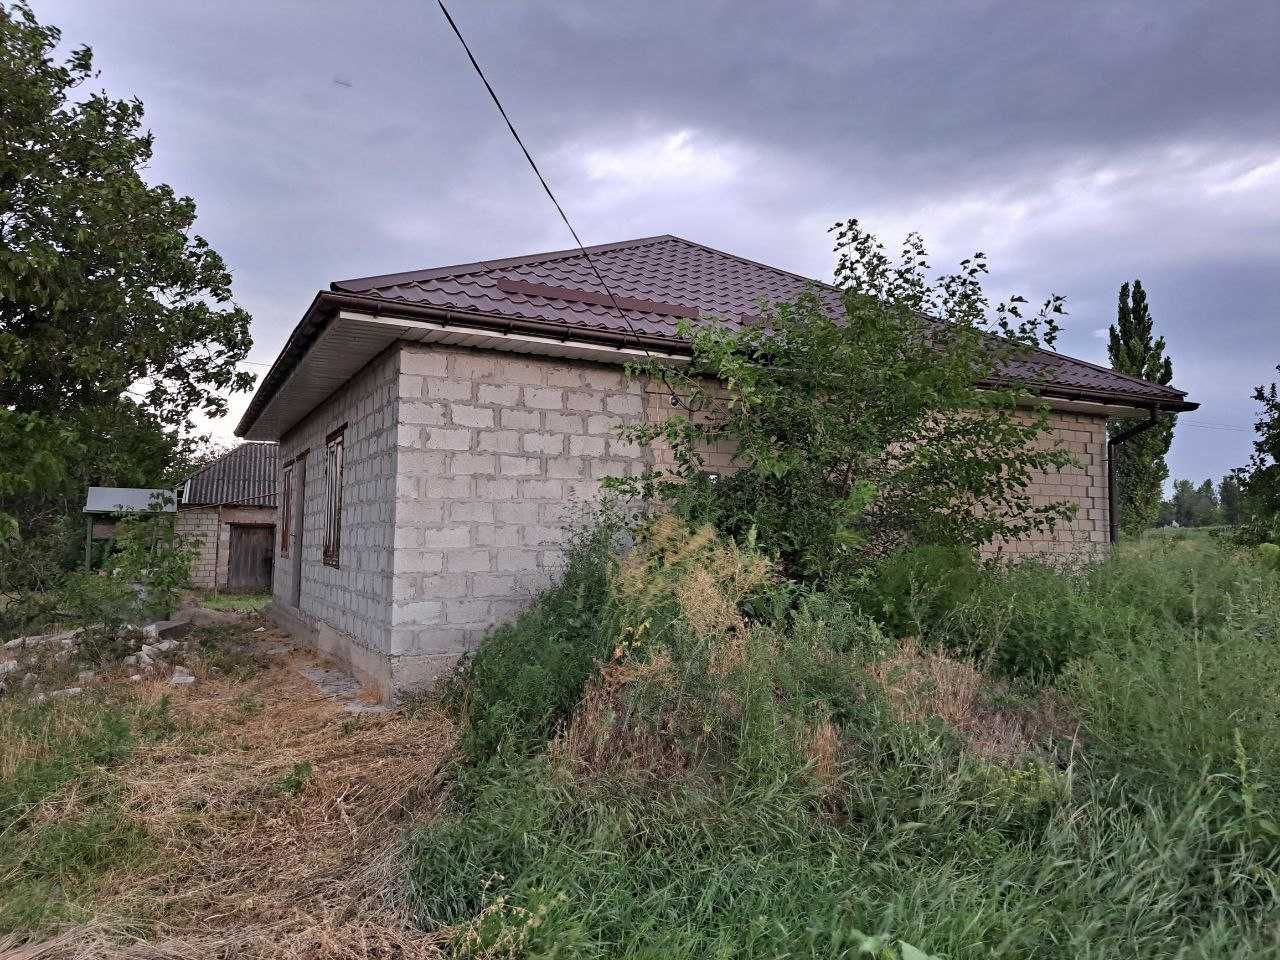 Продам приватний будинок в селищі Петриківка